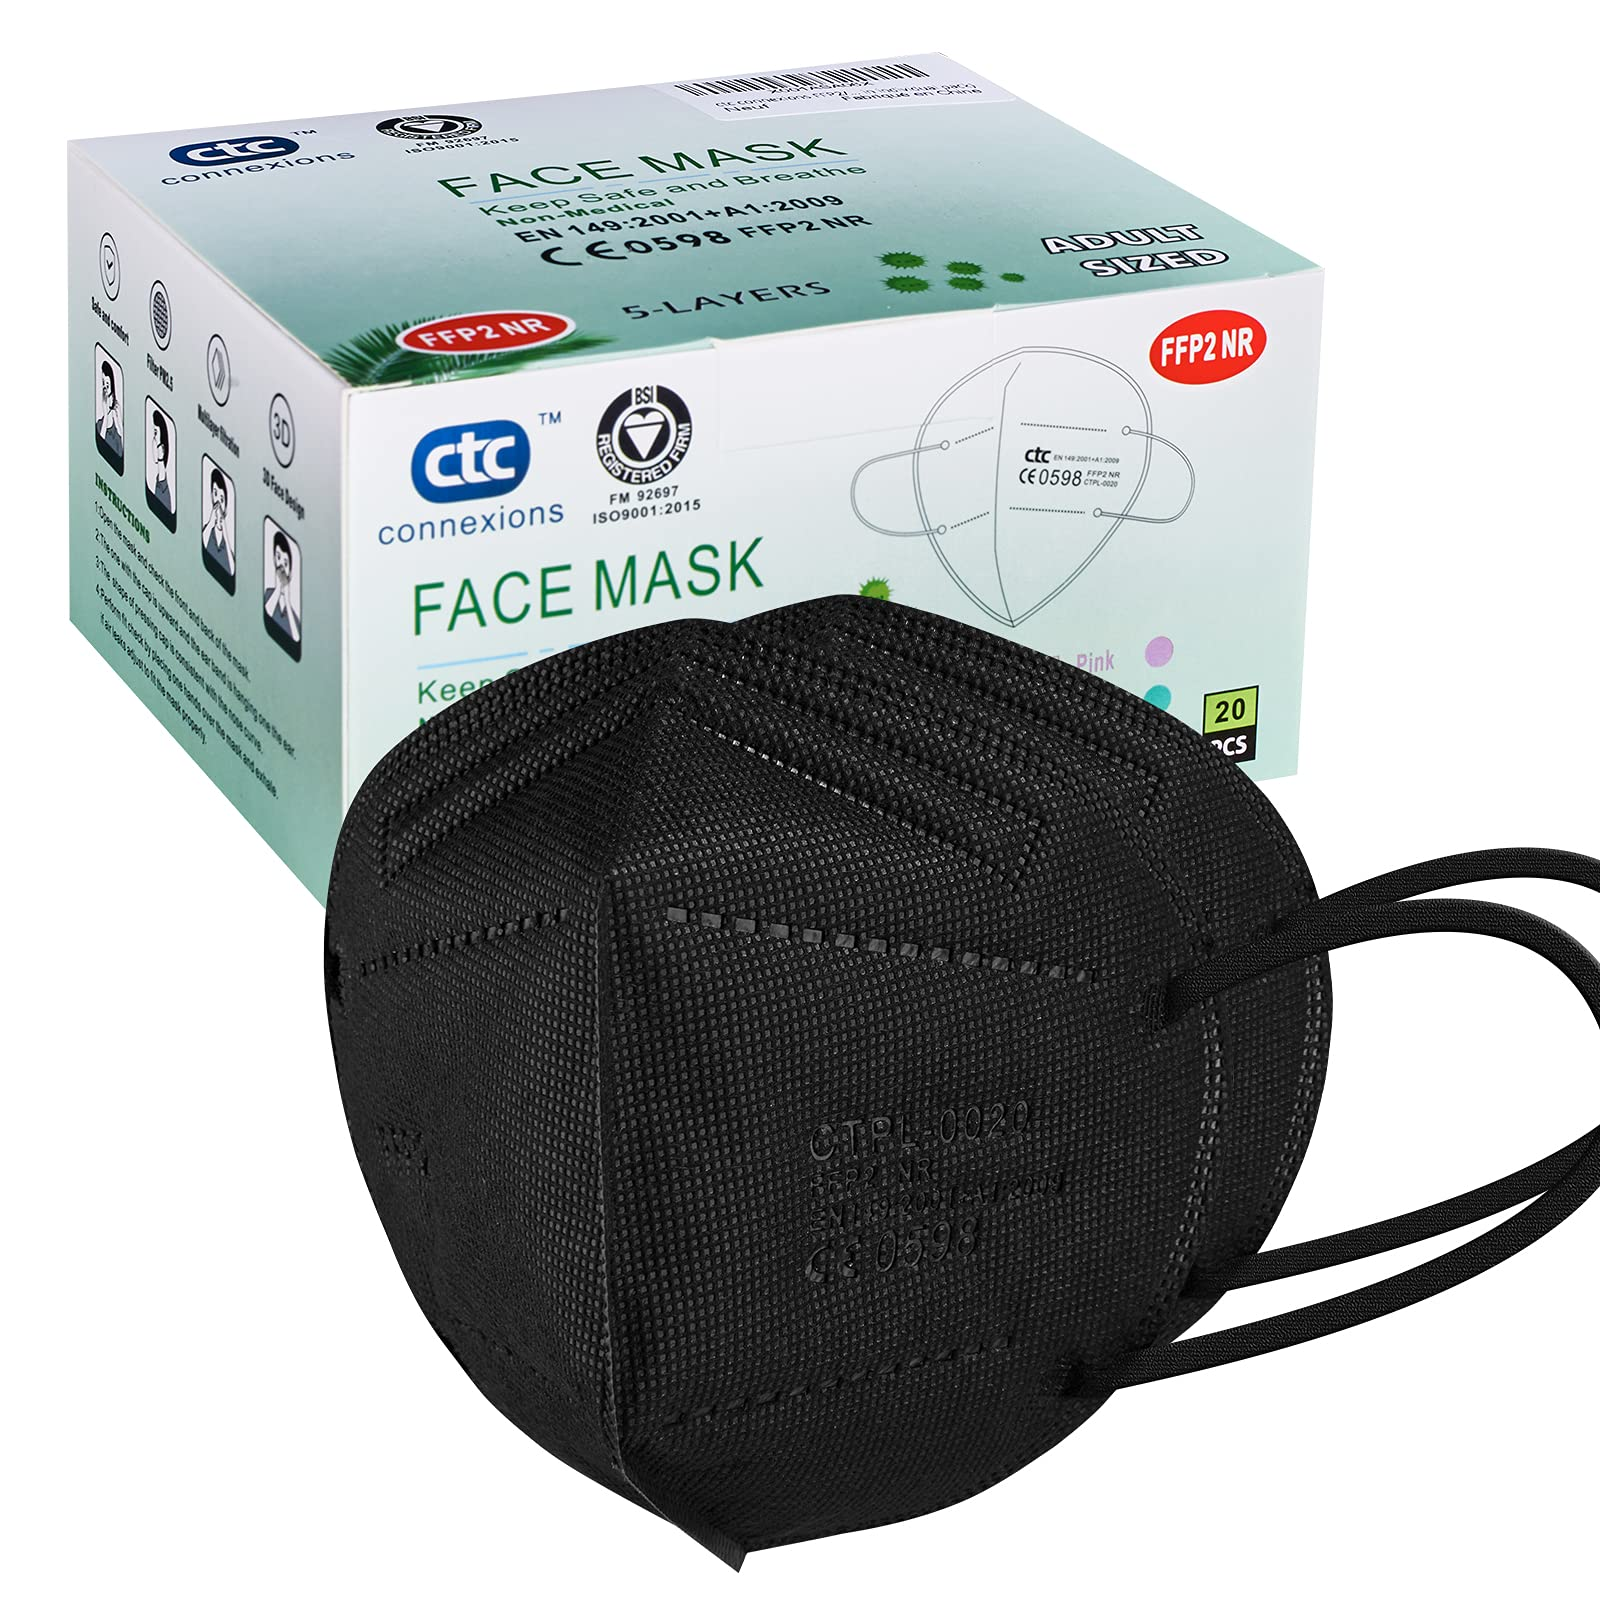 Wholesale FFP2 Disposable Black Face Mask